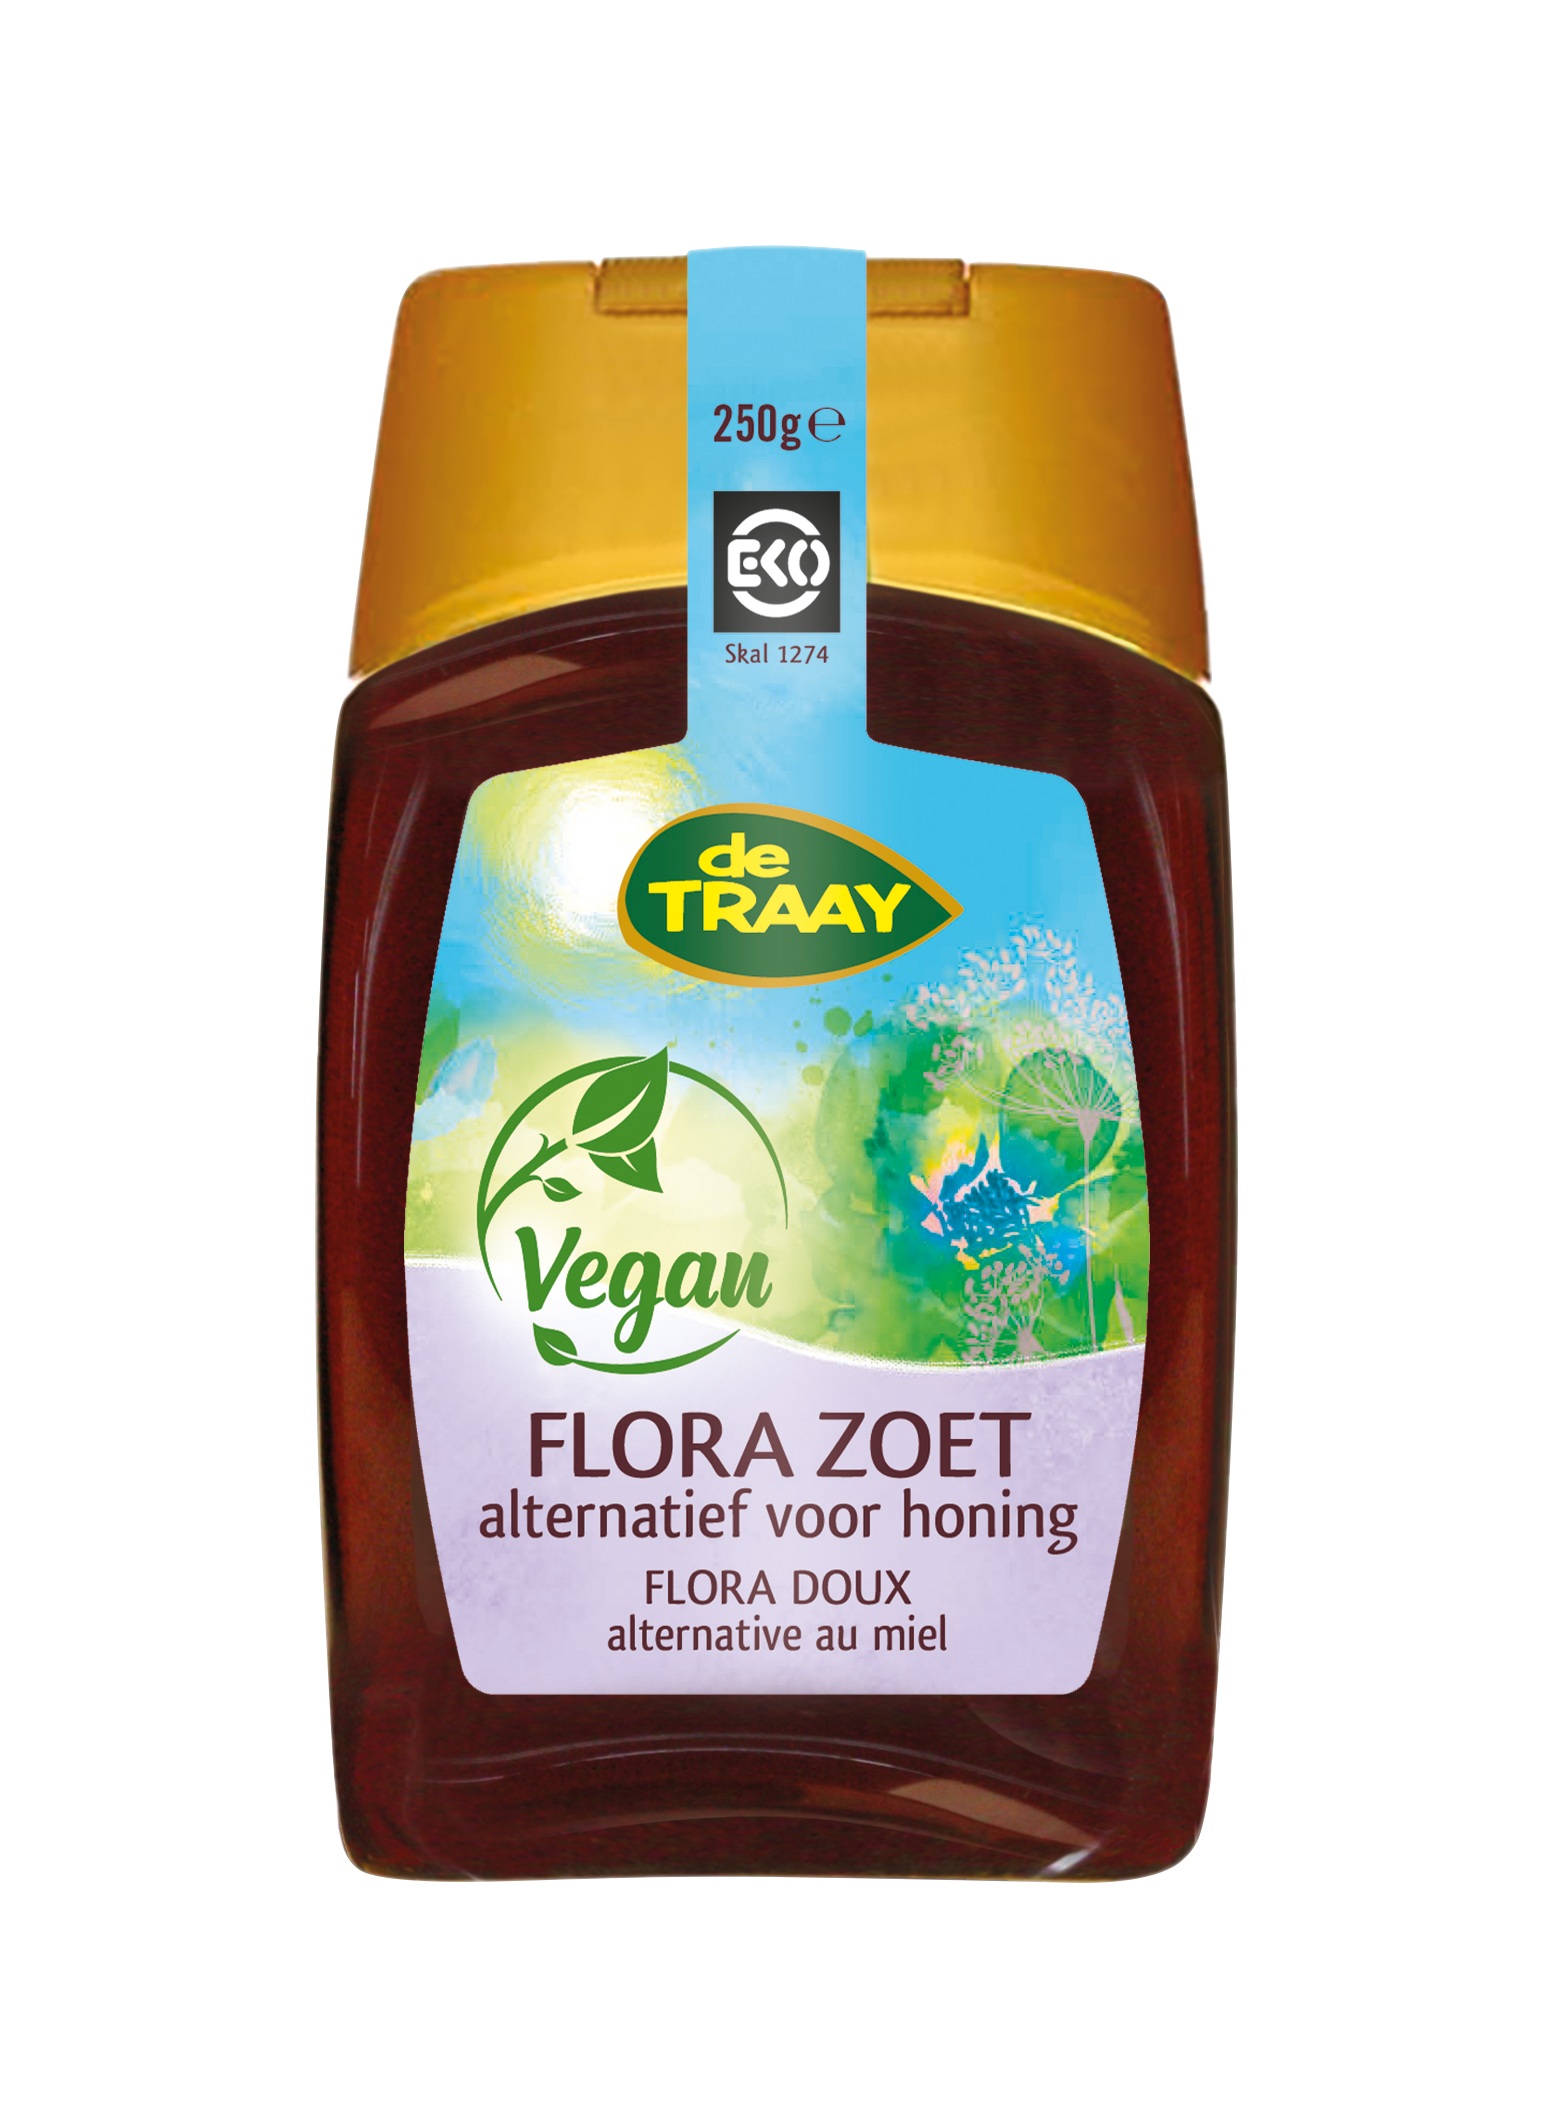 Flora Zoet (Vegan alternatief voor honing)